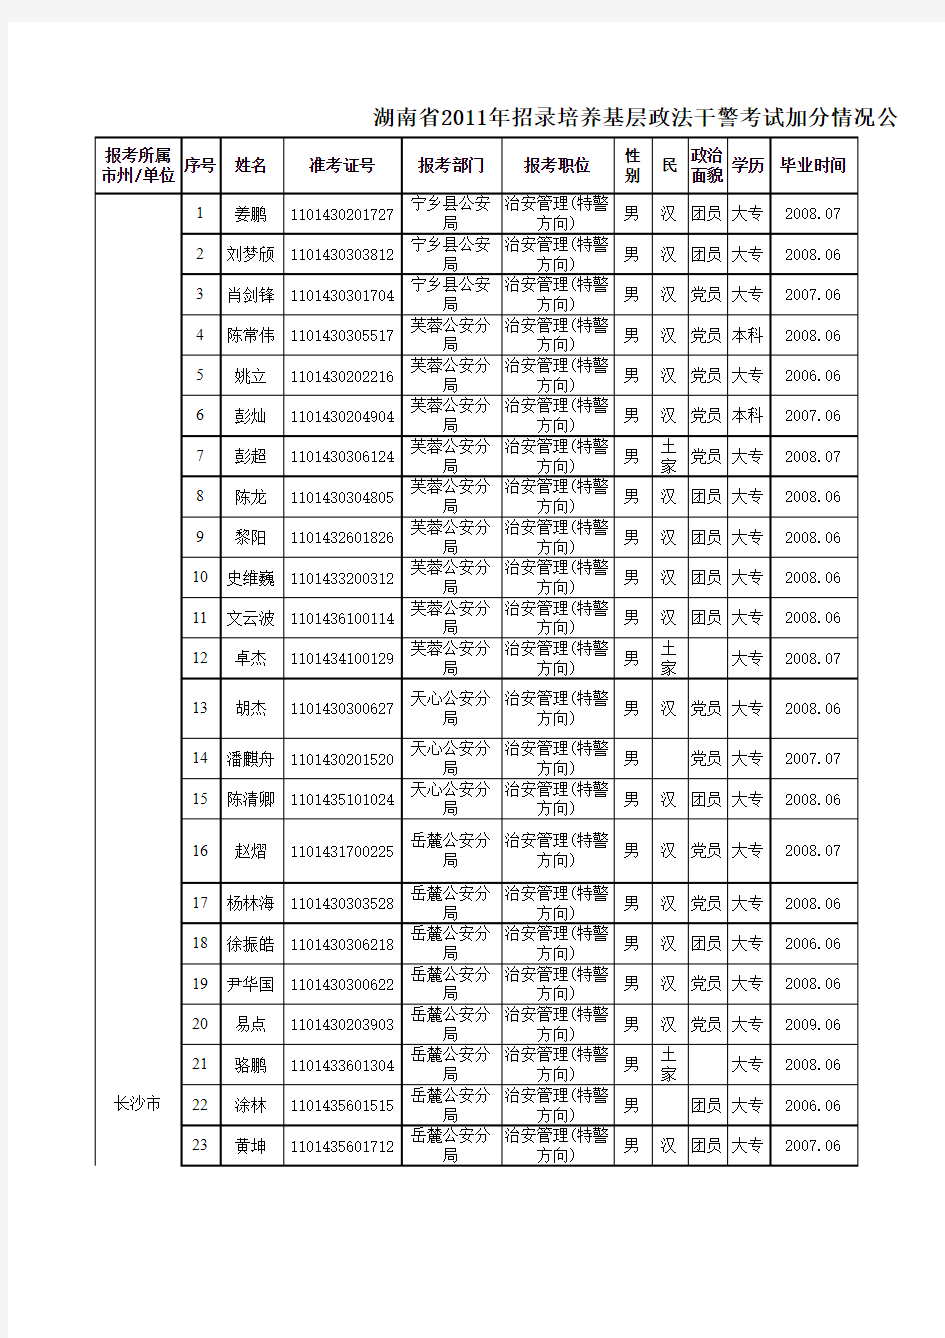 关于湖南省2011年招录培养基层政法干警考试加分情况的公示